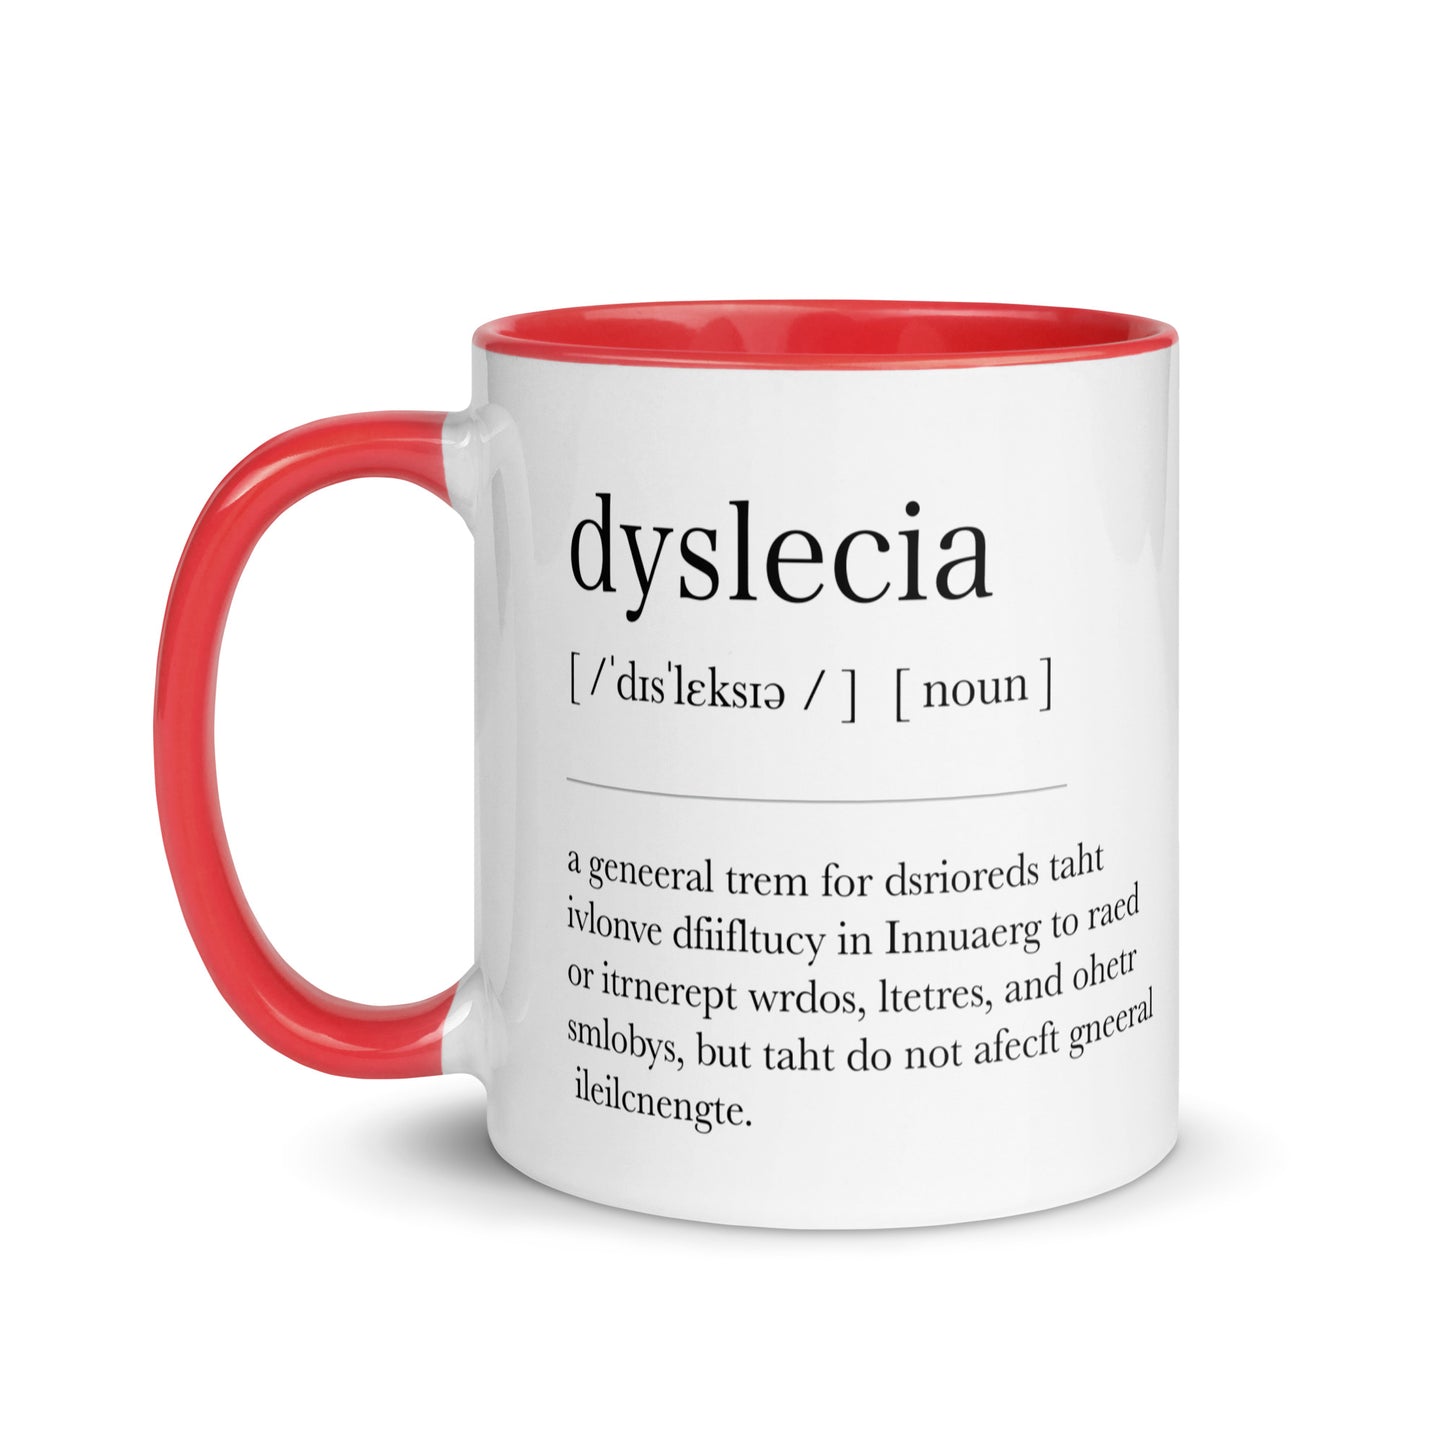 Dyslexia Definition Mug